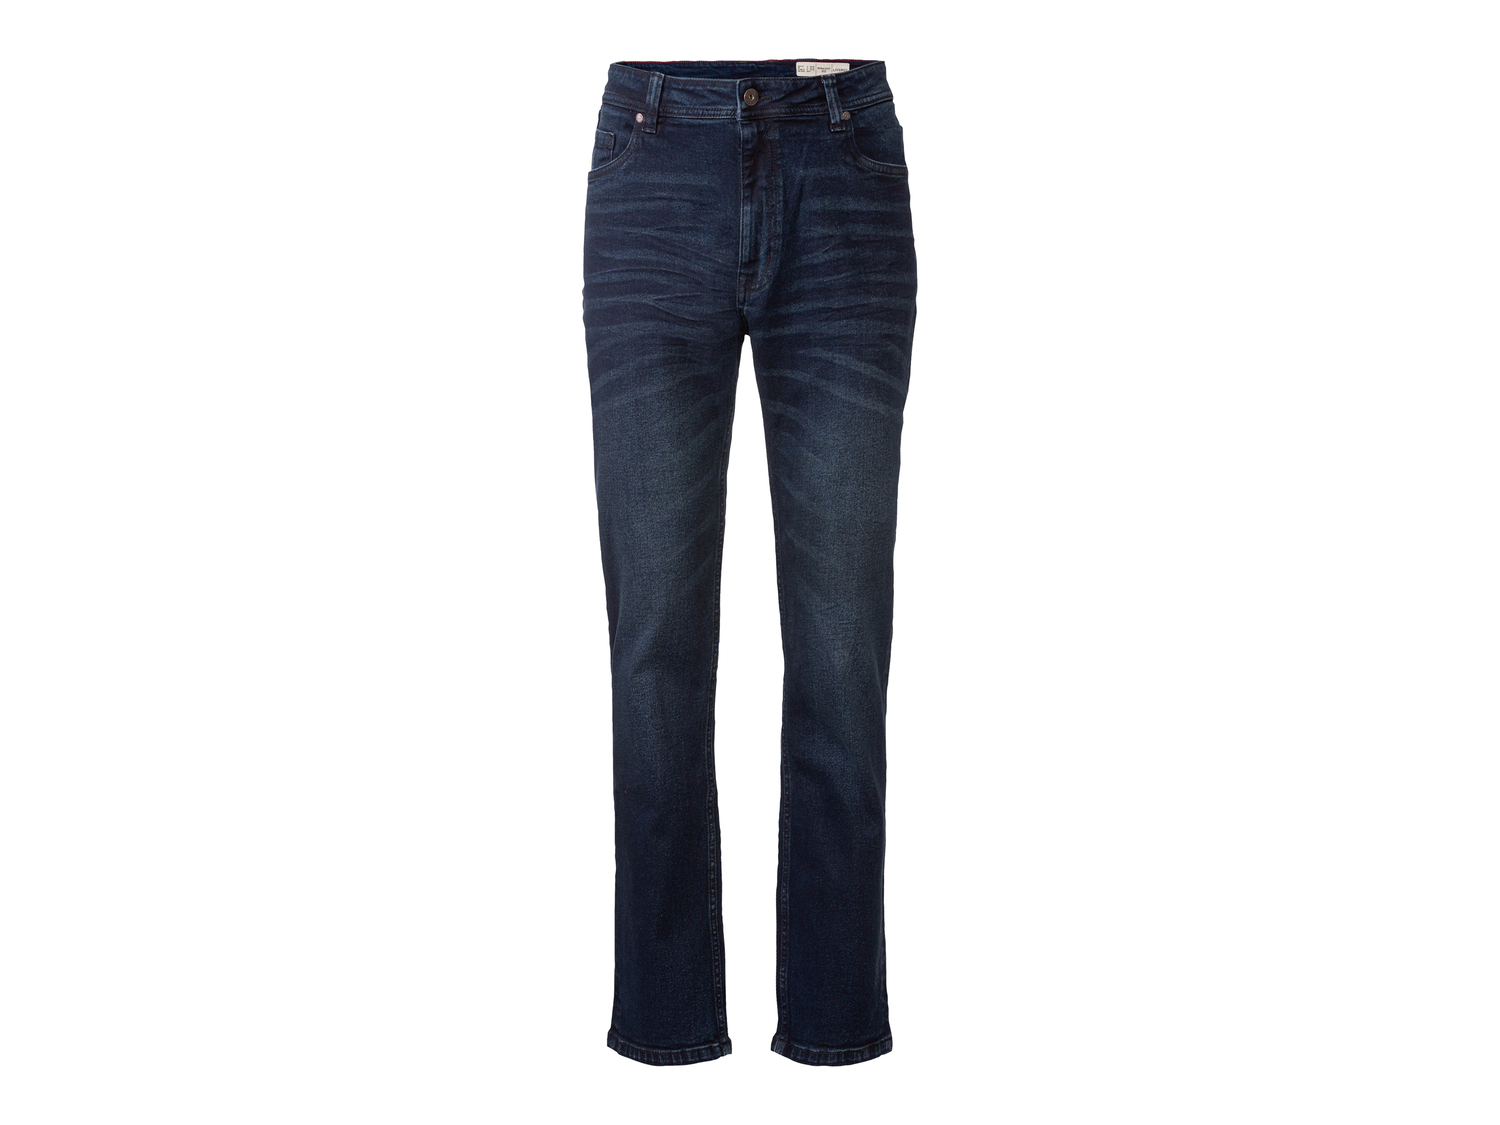 Jeans da uomo Livergy, prezzo 17.99 &#8364; 
Misure: 46-54
Taglie disponibili

Caratteristiche

- ...